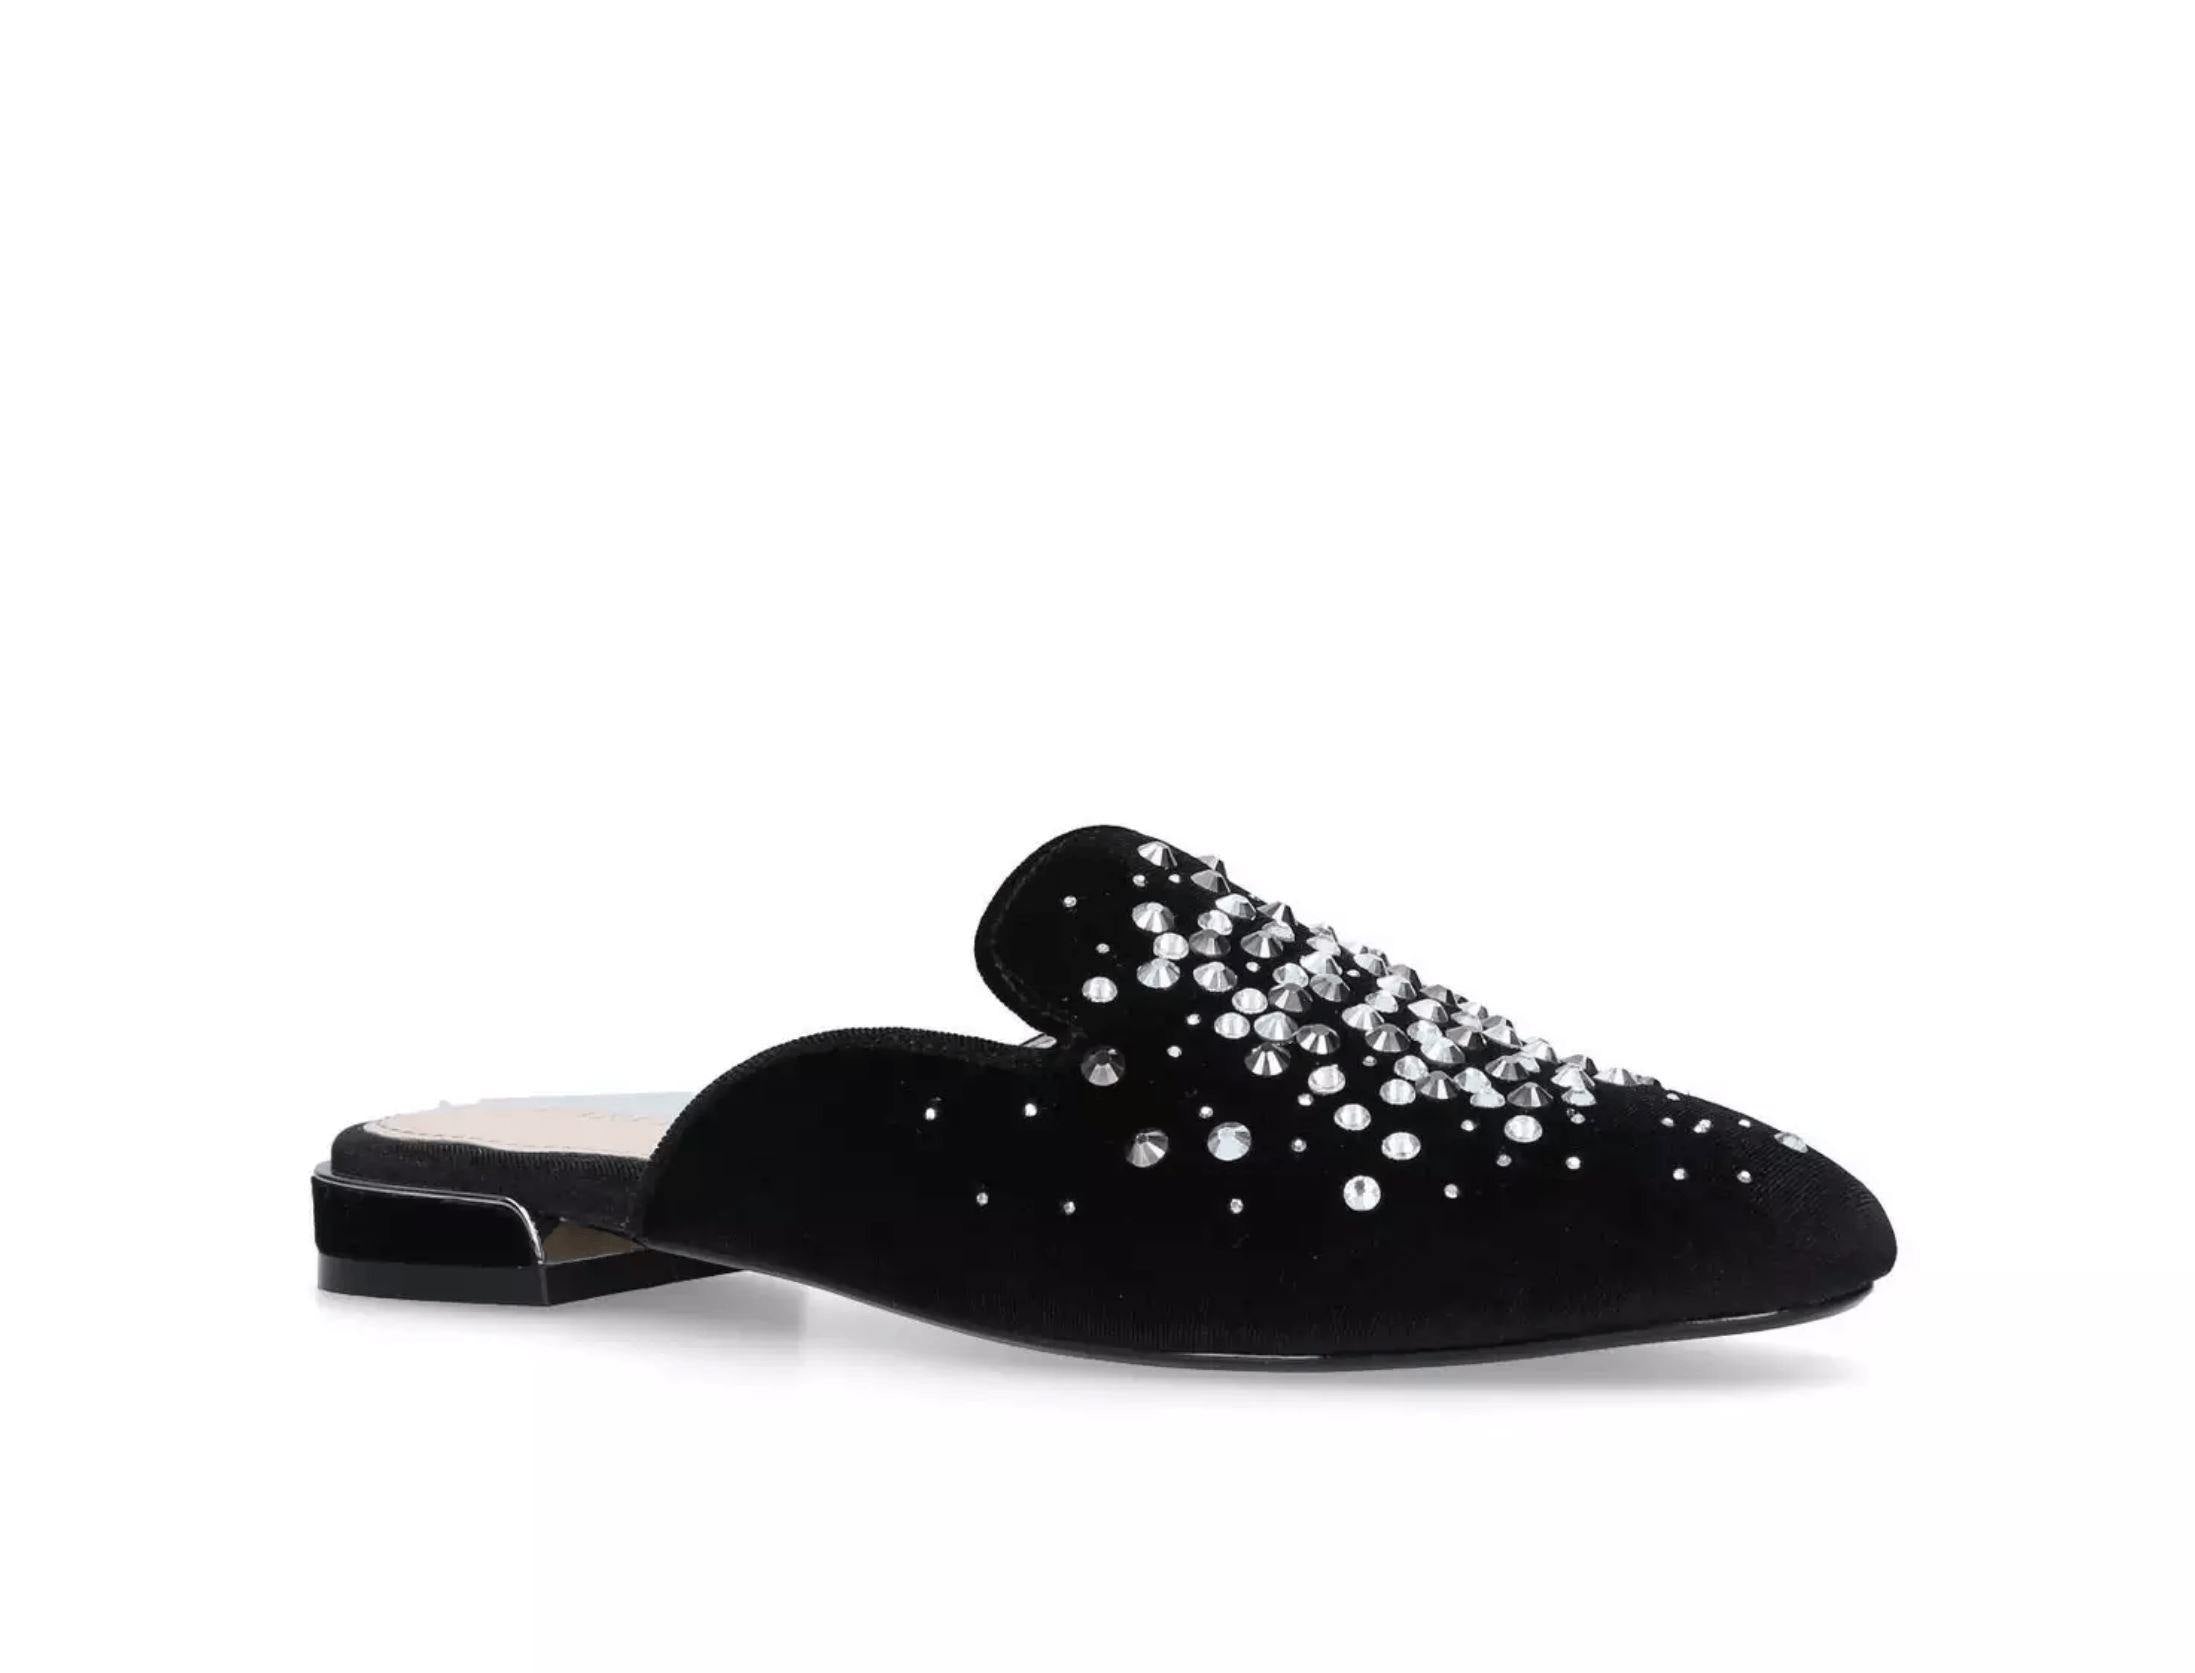 Lattifa Black Embellished Slip On Mules By Carvela Shoes Foxyavenue UK